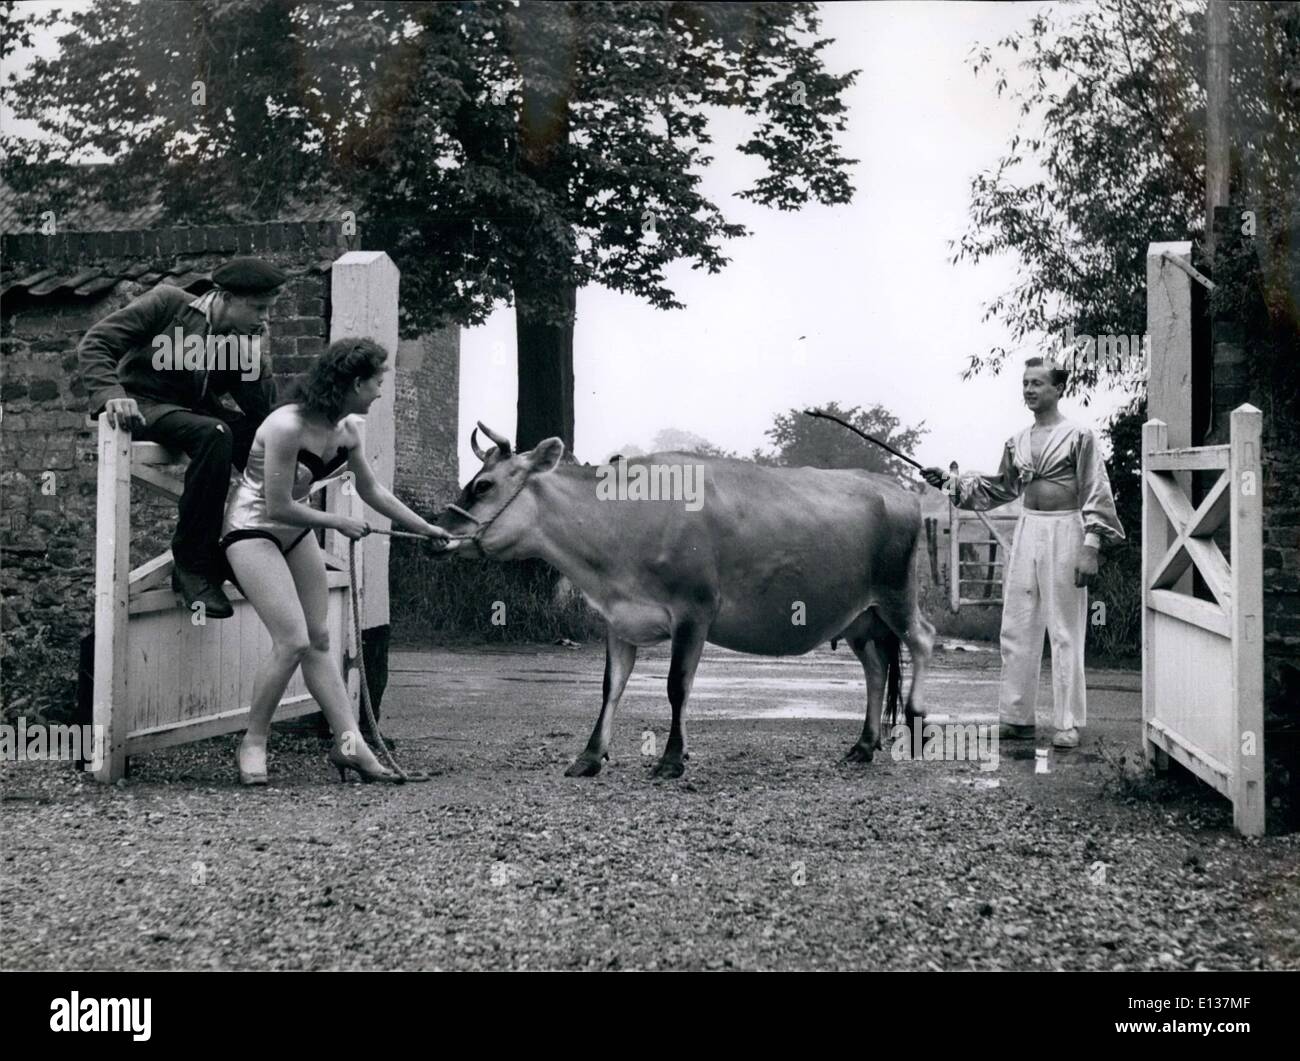 Febrero 29, 2012 - Peter y Margaret tratar de persuadir a la belleza, la vaca, para que vengan a ver su ensayo en los campos. Foto de stock